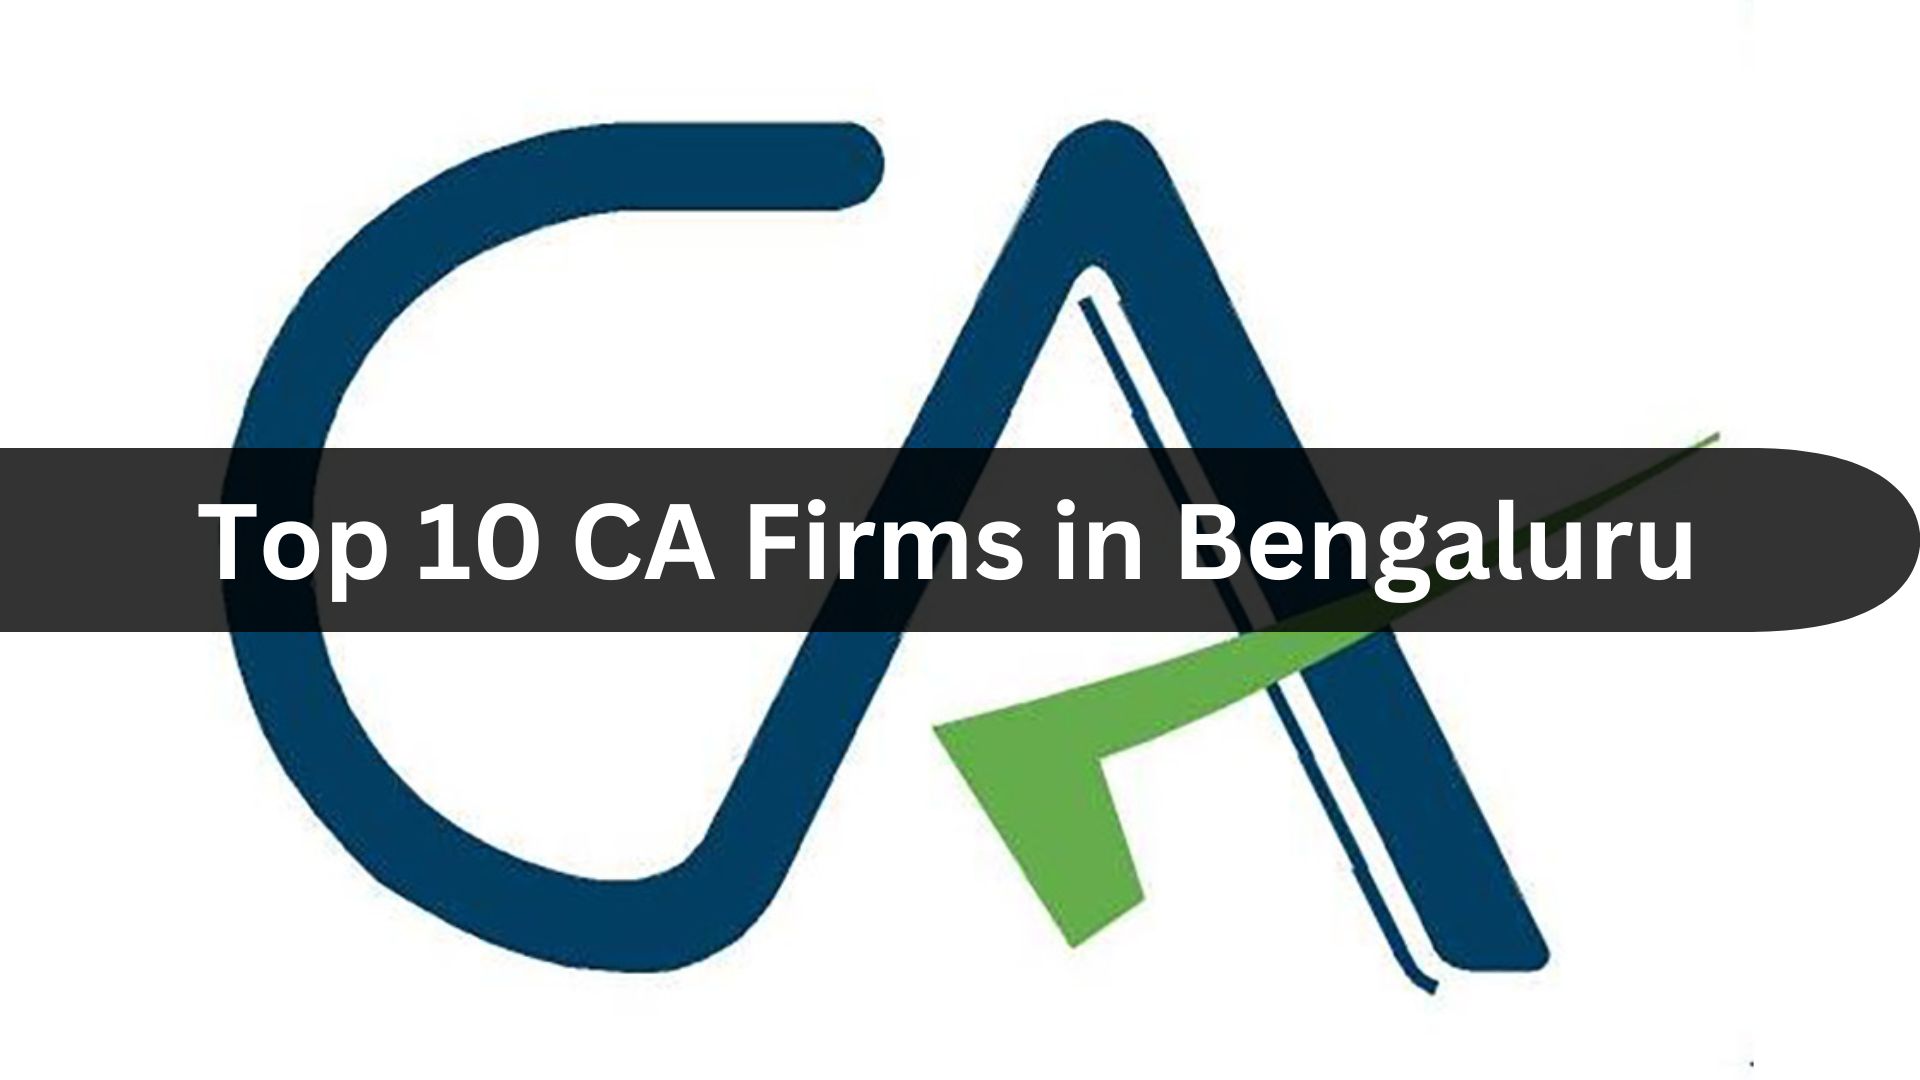 Top 10 CA Firms in Bengaluru